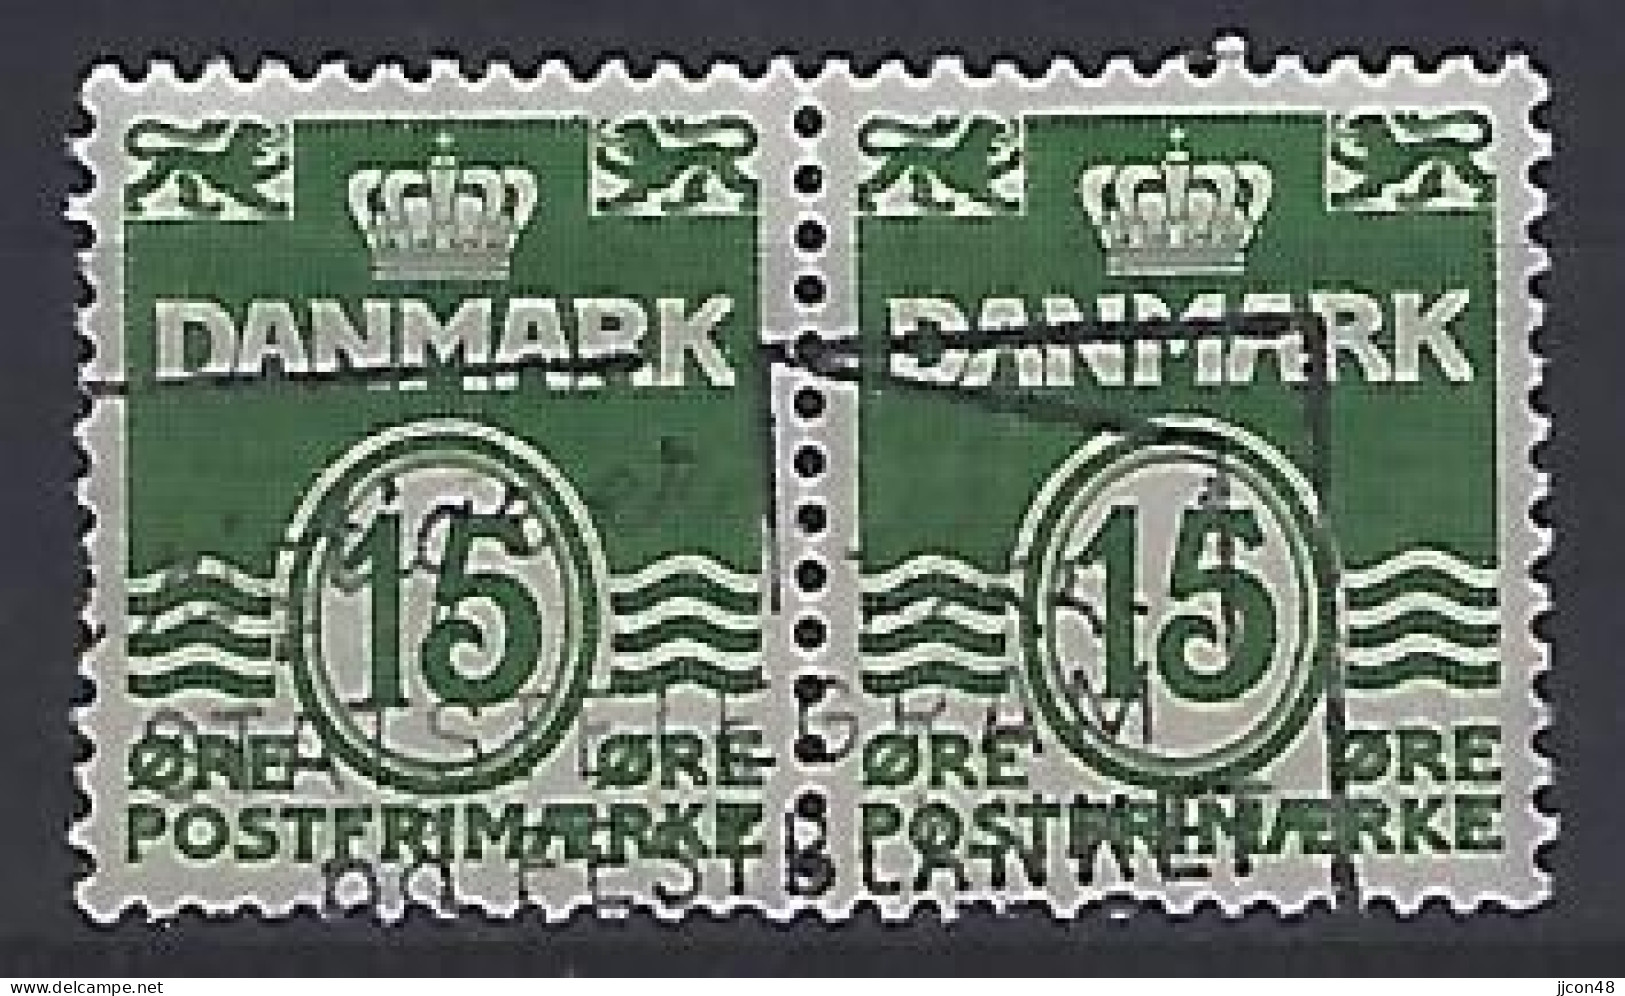 Denmark 1963  Wavy Lines (o) Mi.410 X - Used Stamps